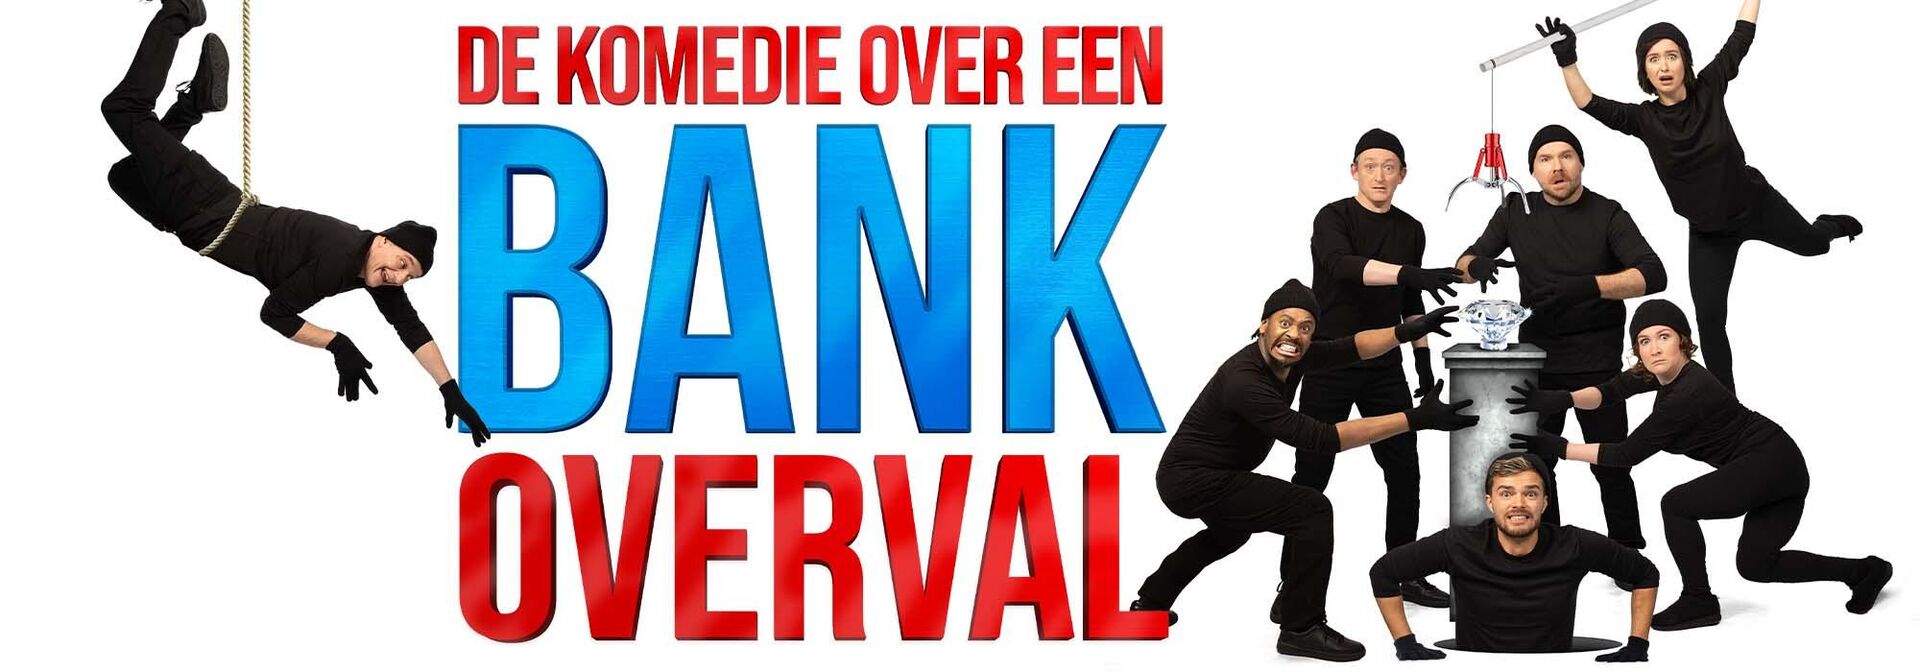 De komedie over een bankoverval